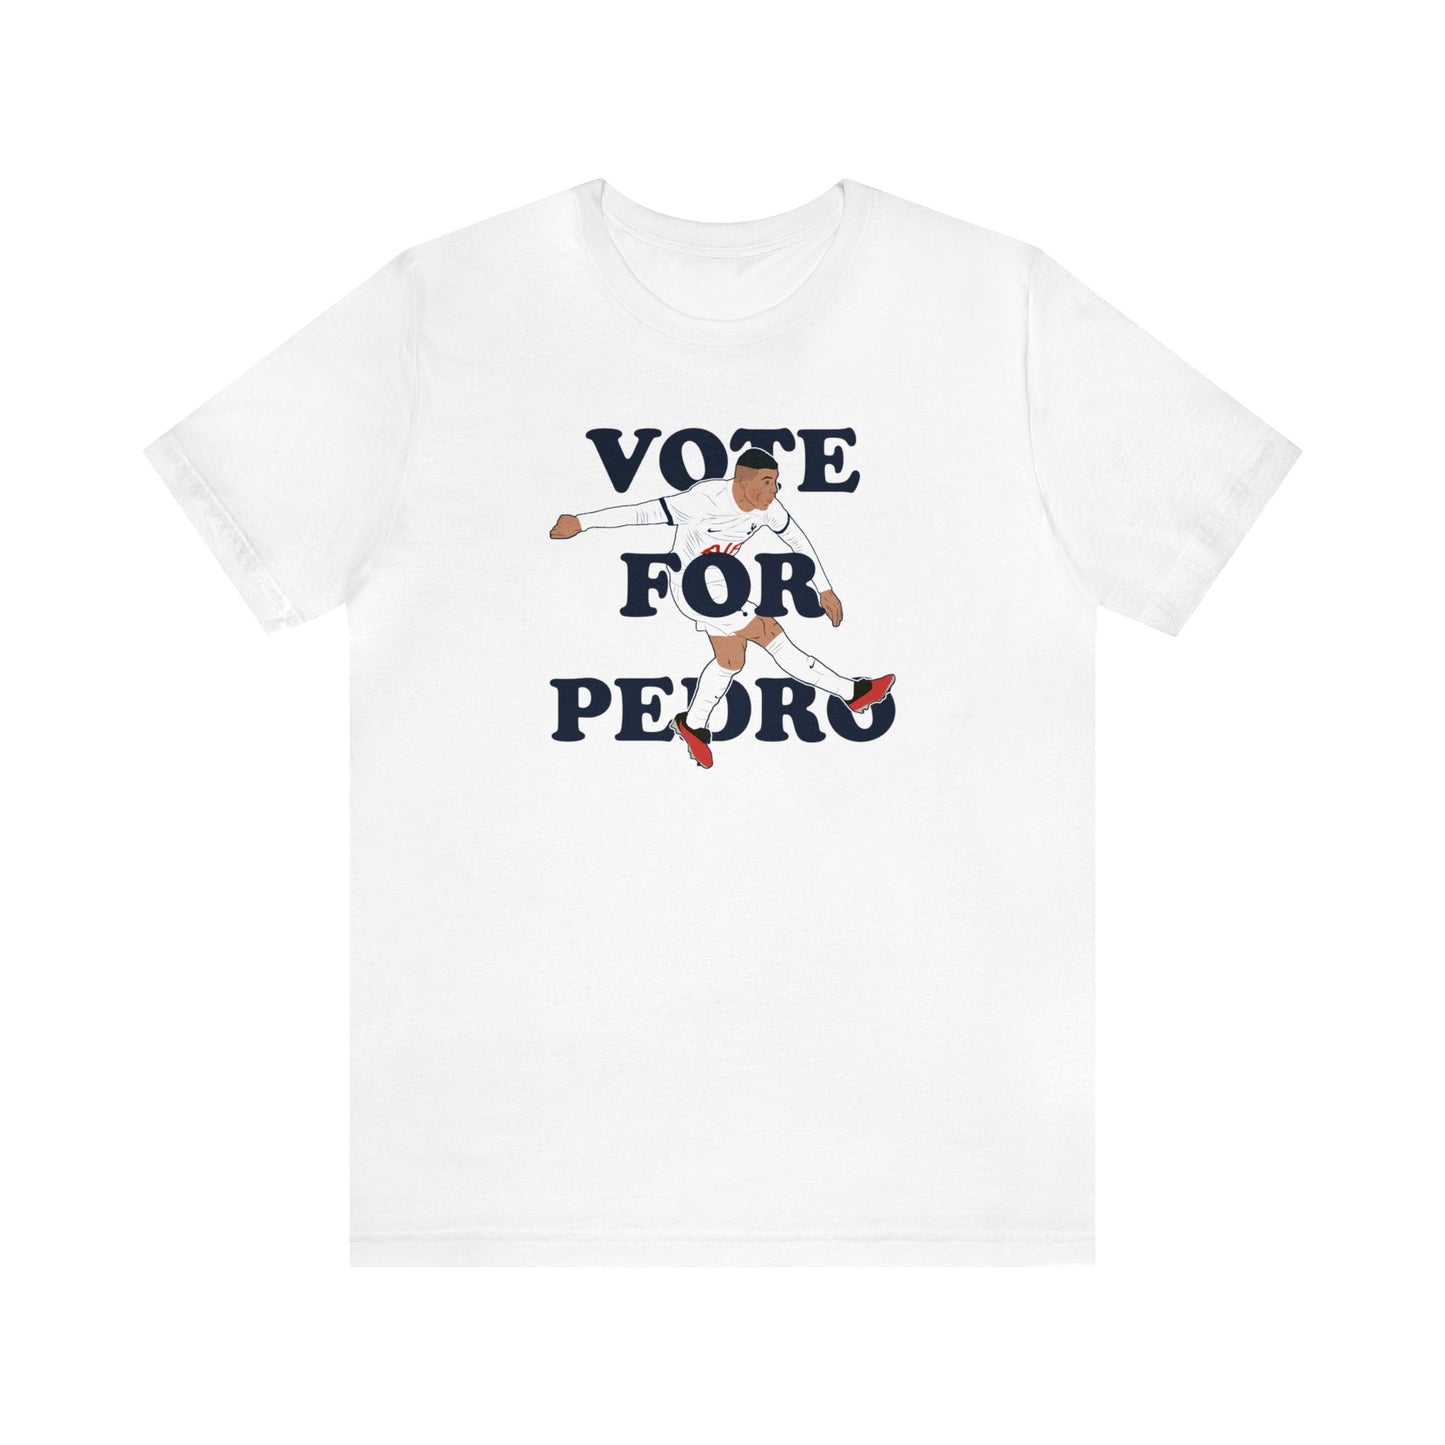 Pedro Porro Vote For Pedro Tottenham T-Shirt